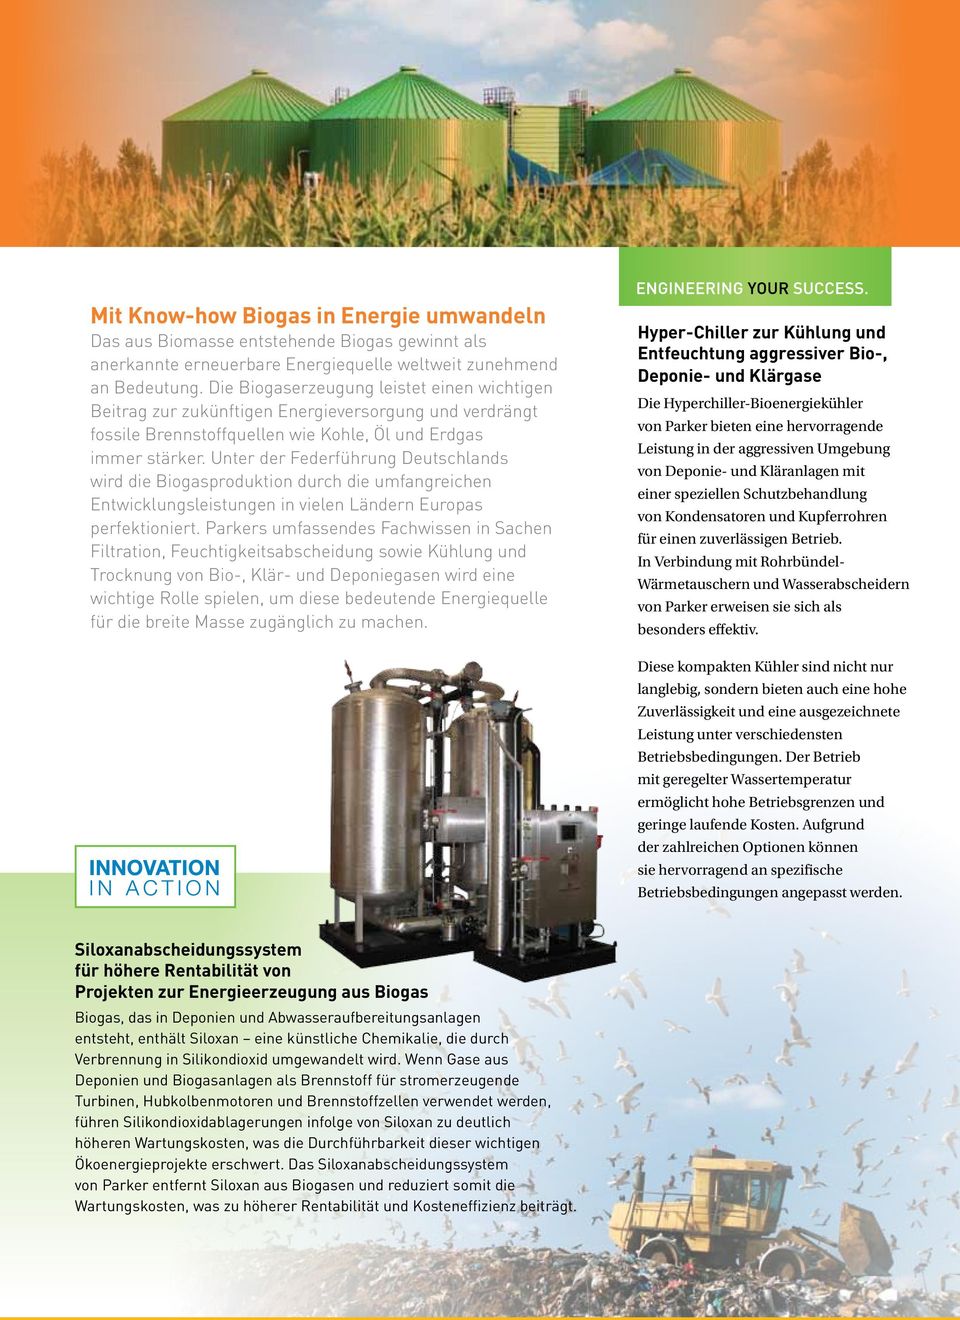 Unter der Federführung Deutschlands wird die Biogasproduktion durch die umfangreichen Entwicklungsleistungen in vielen Ländern Europas perfektioniert.